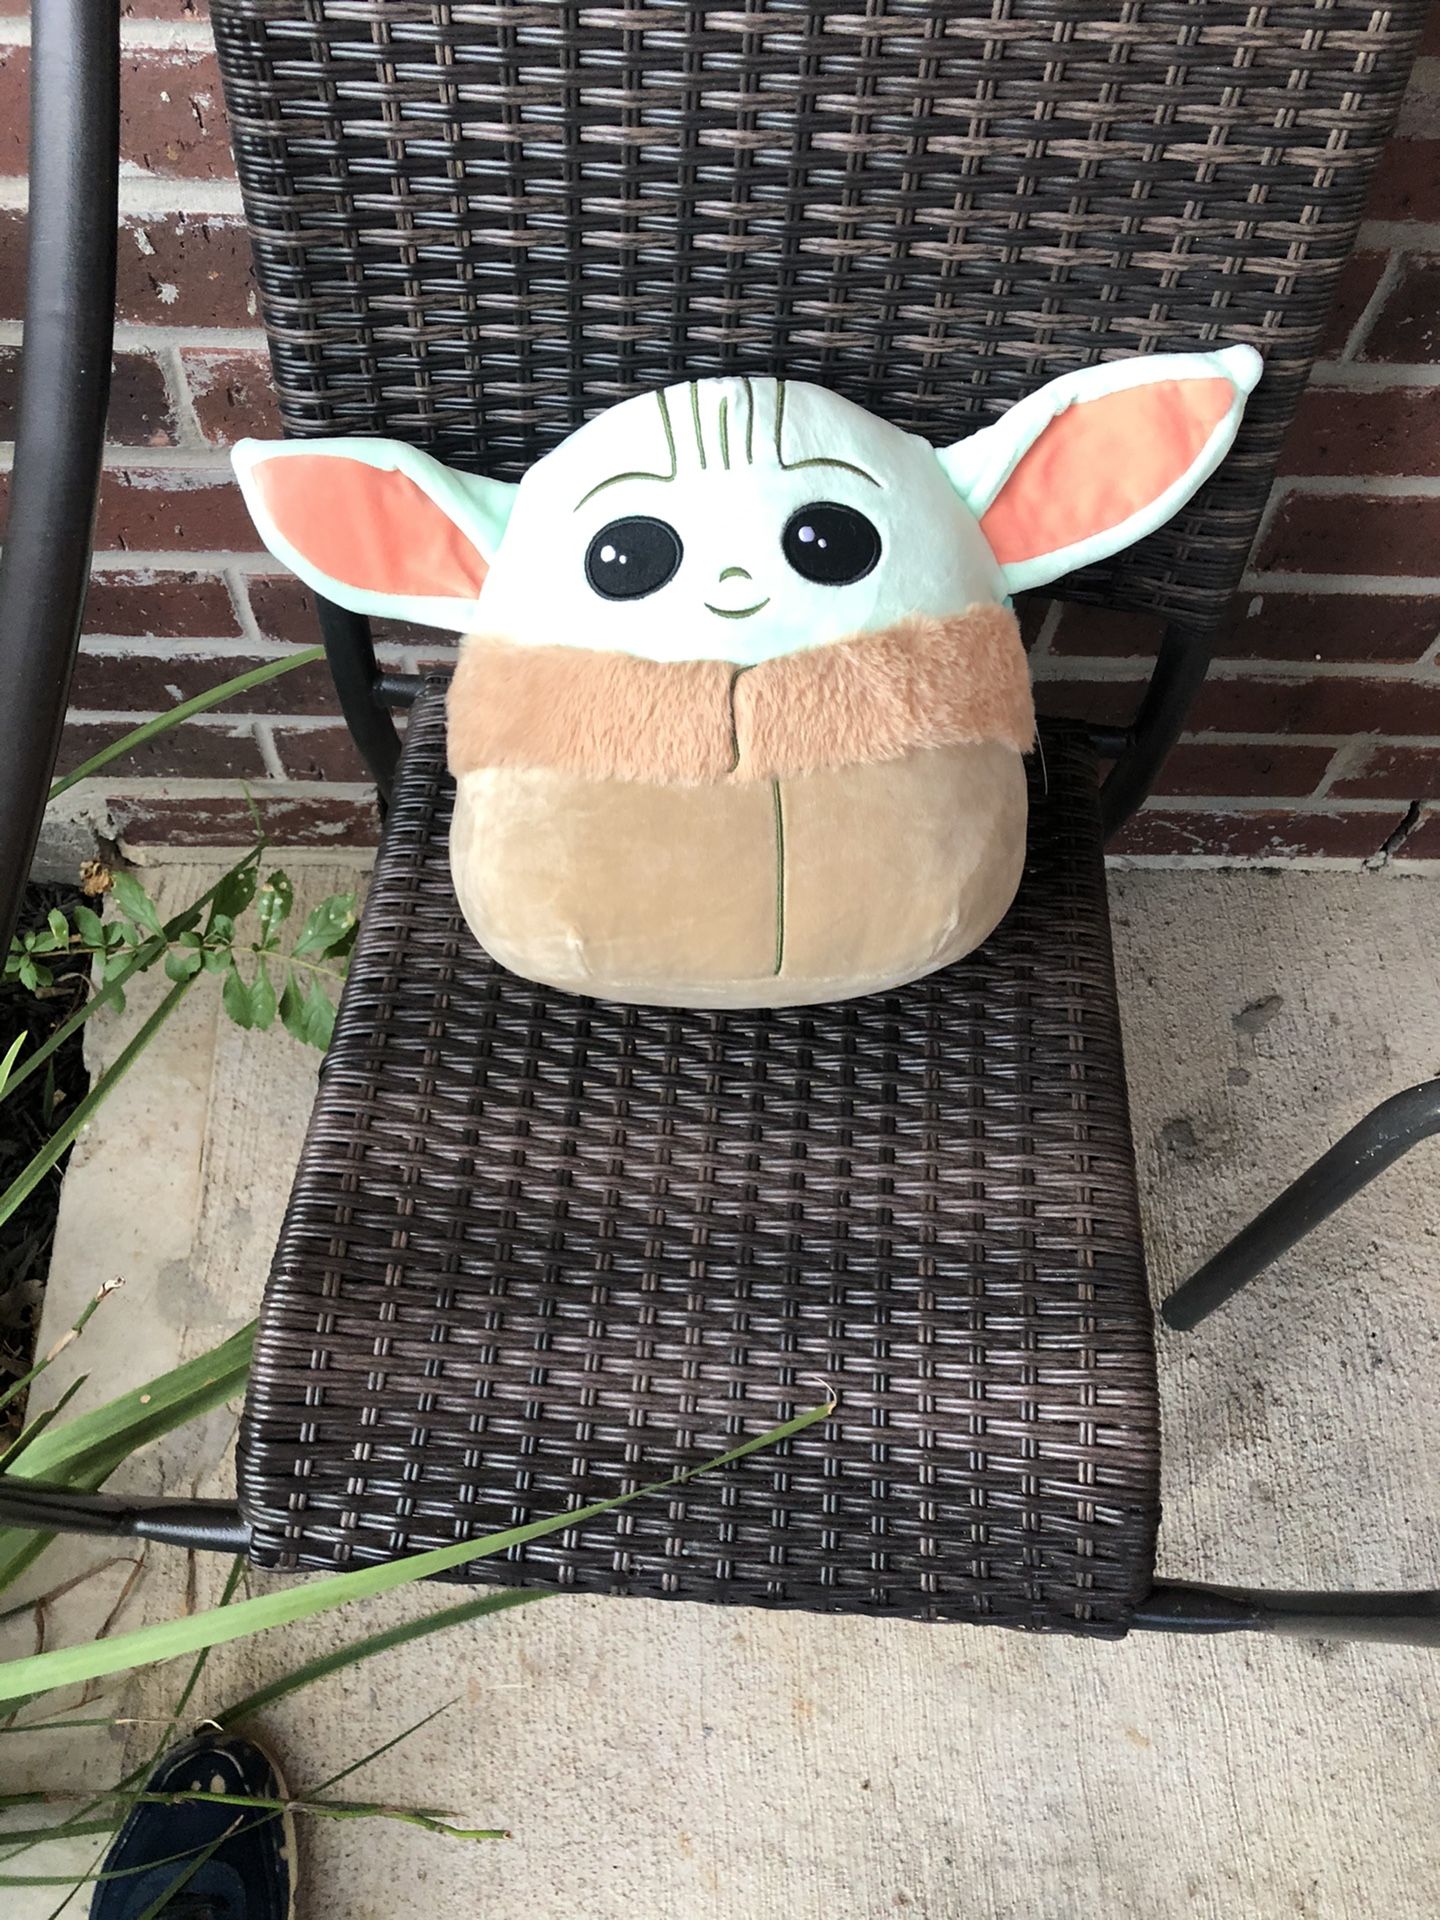 Star Wars Baby Yoda 10 Inches